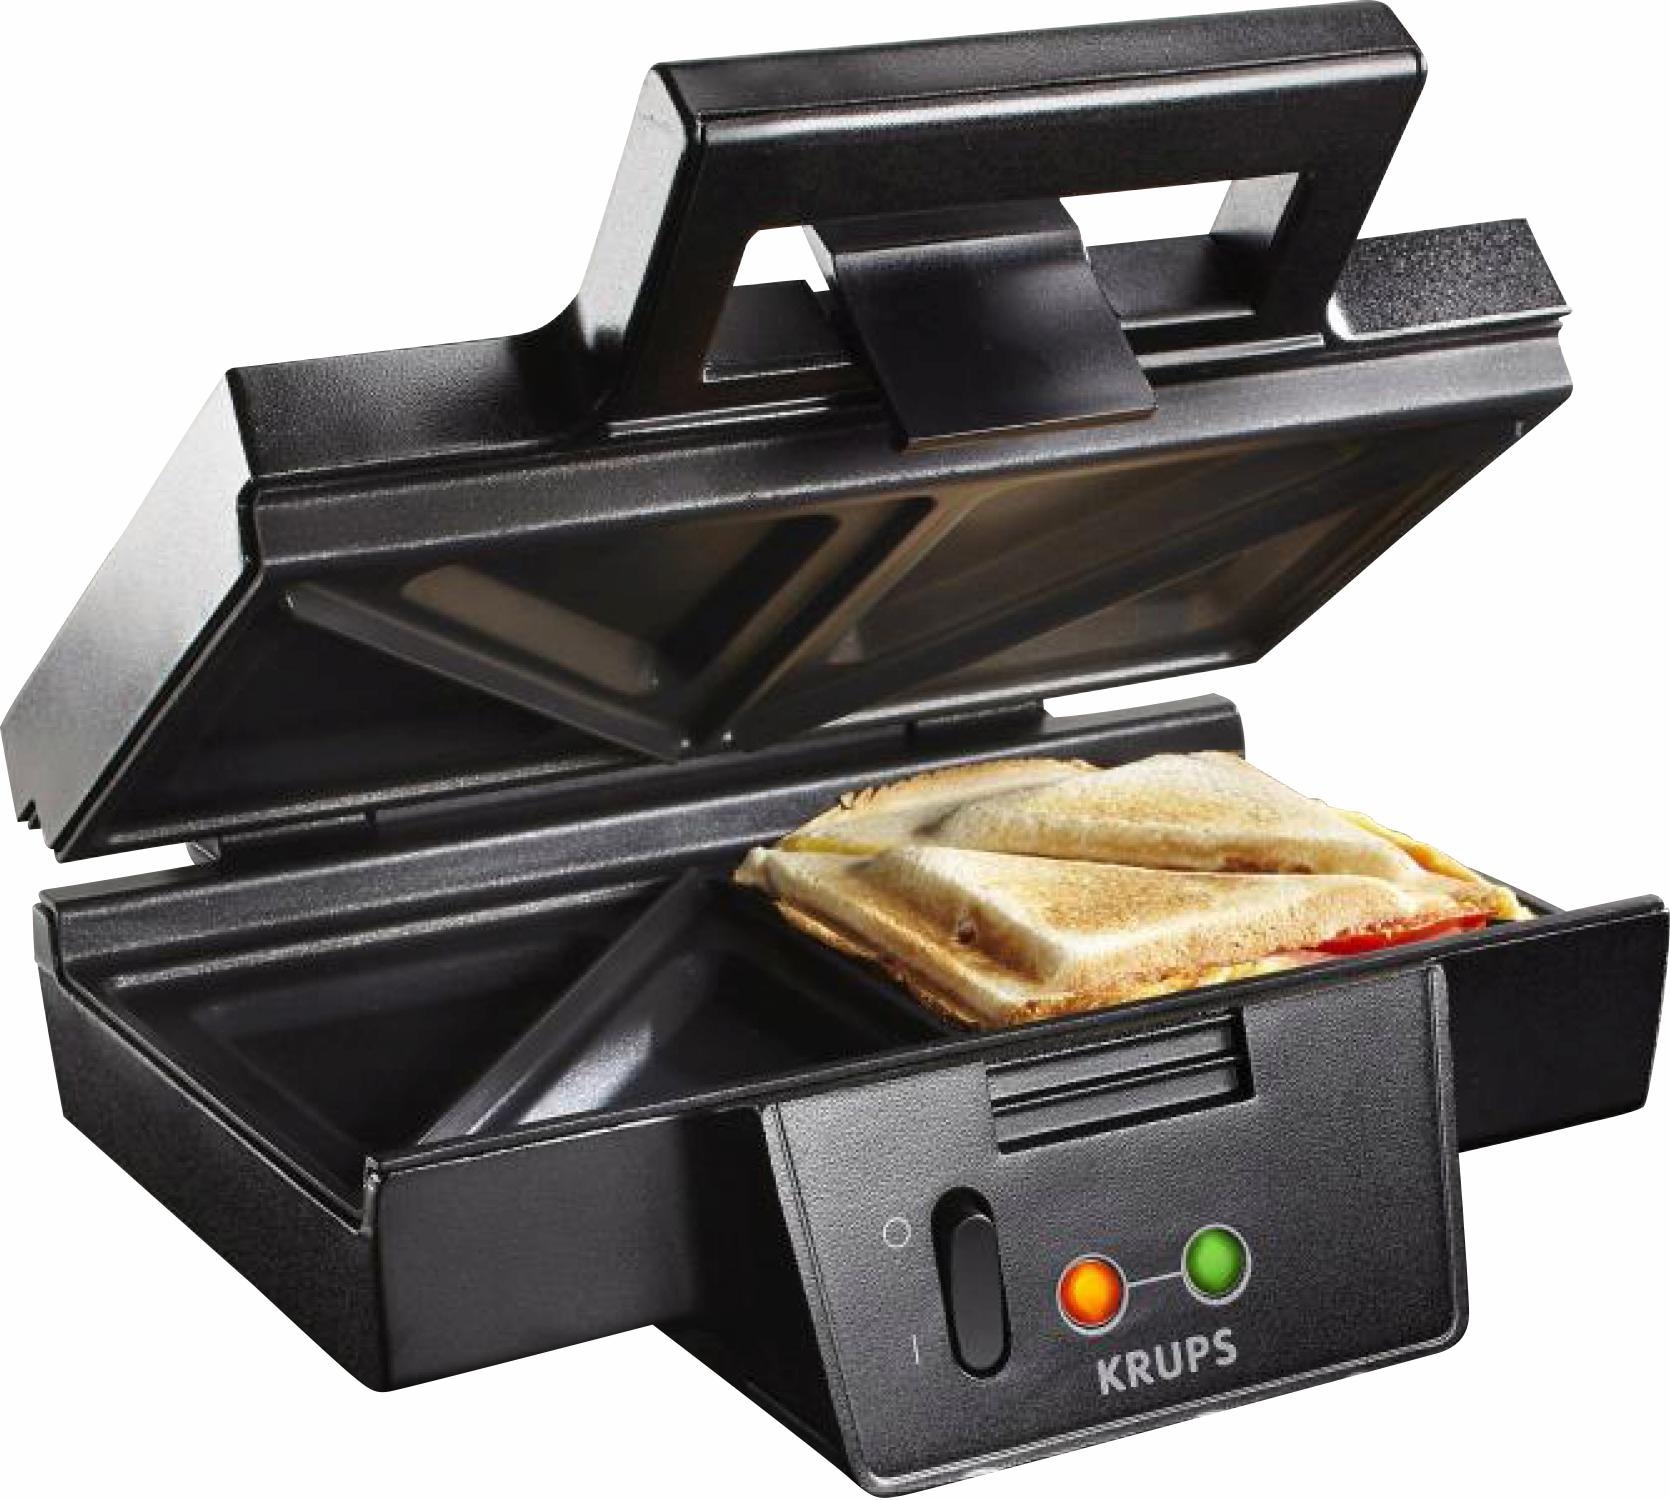 Krups Sandwichmaker FDK451, Watt auf Rechnung kaufen 850